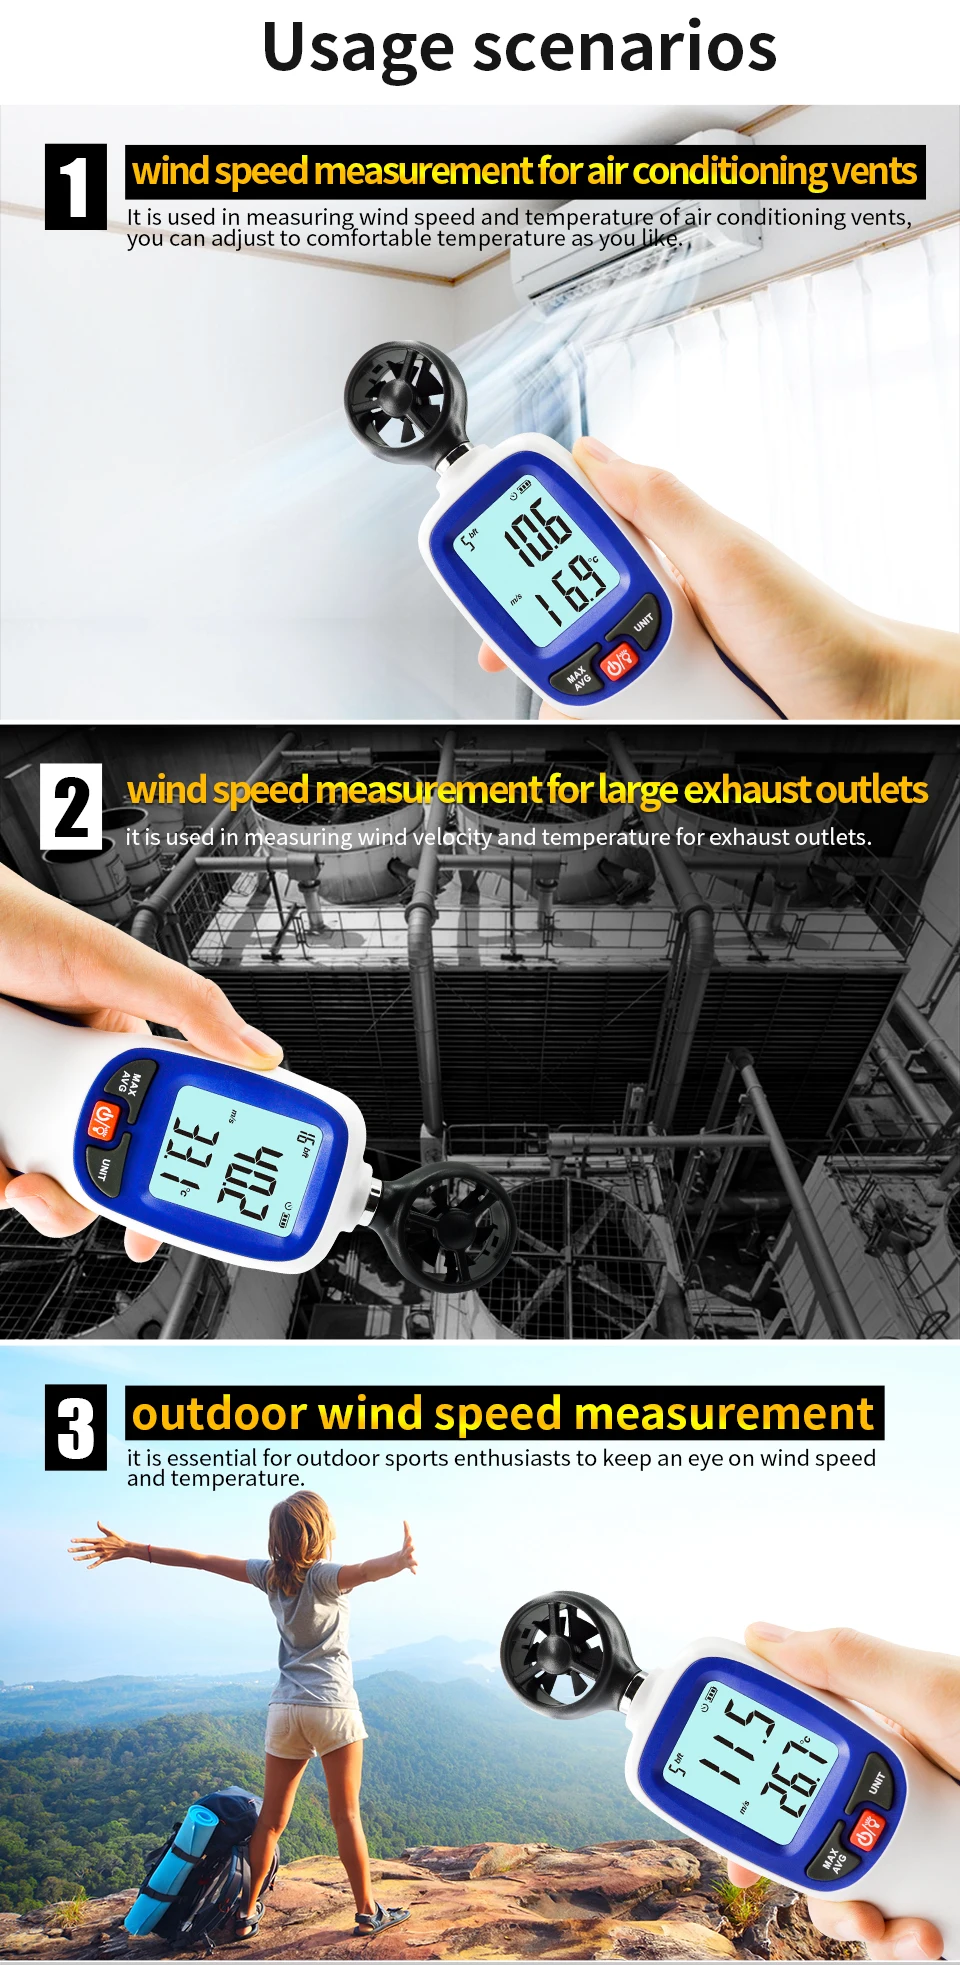 WINTACT цифровой измеритель скорости ветра Анемометр поток воздуха инструмент датчик температуры ЖК-дисплей Авто Тахометр WT82 WT82B